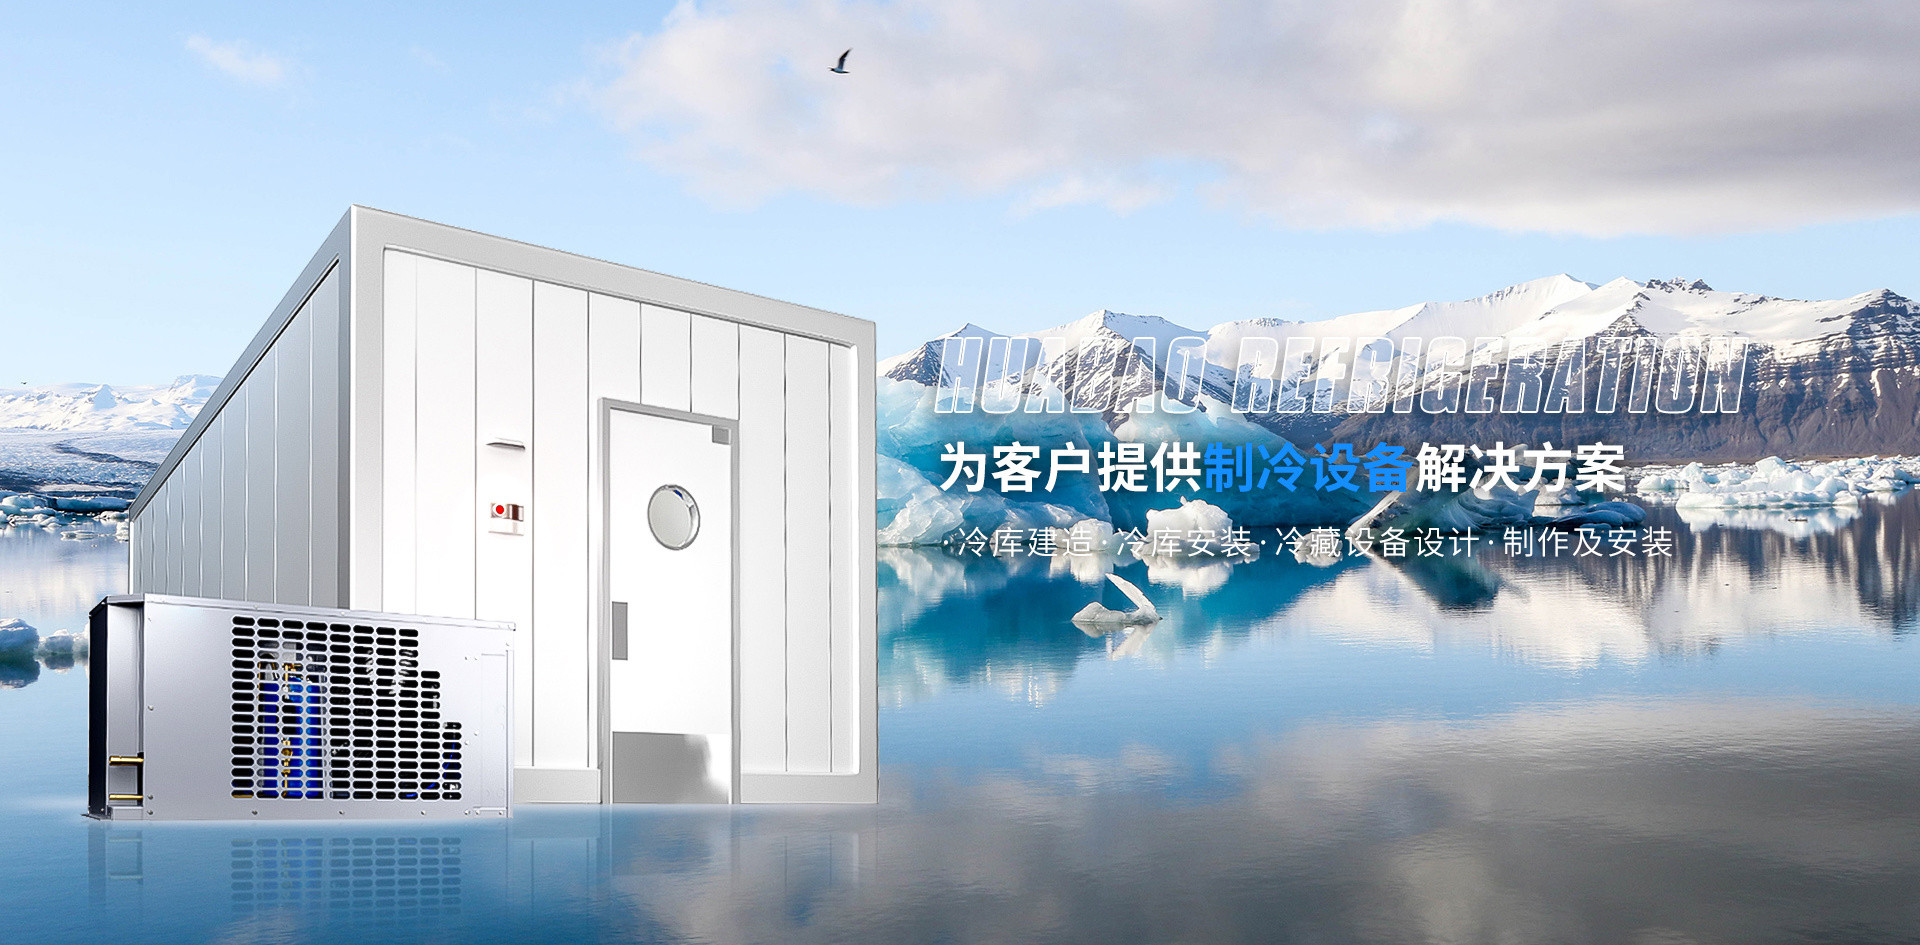 华宝制冷为客户提供冷库建造、冷库安装、冷藏设备设计、制作及施工安装